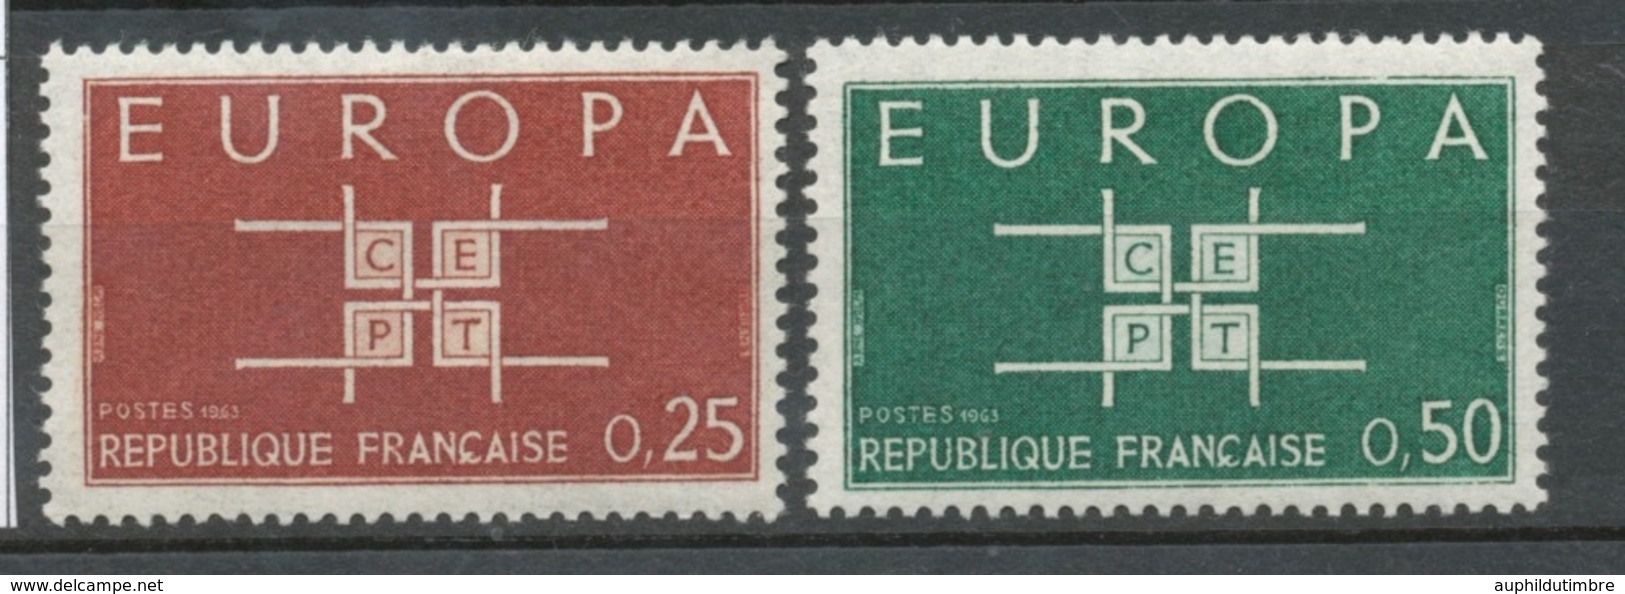 Série Europa. 2 Valeurs Y1397S - Neufs